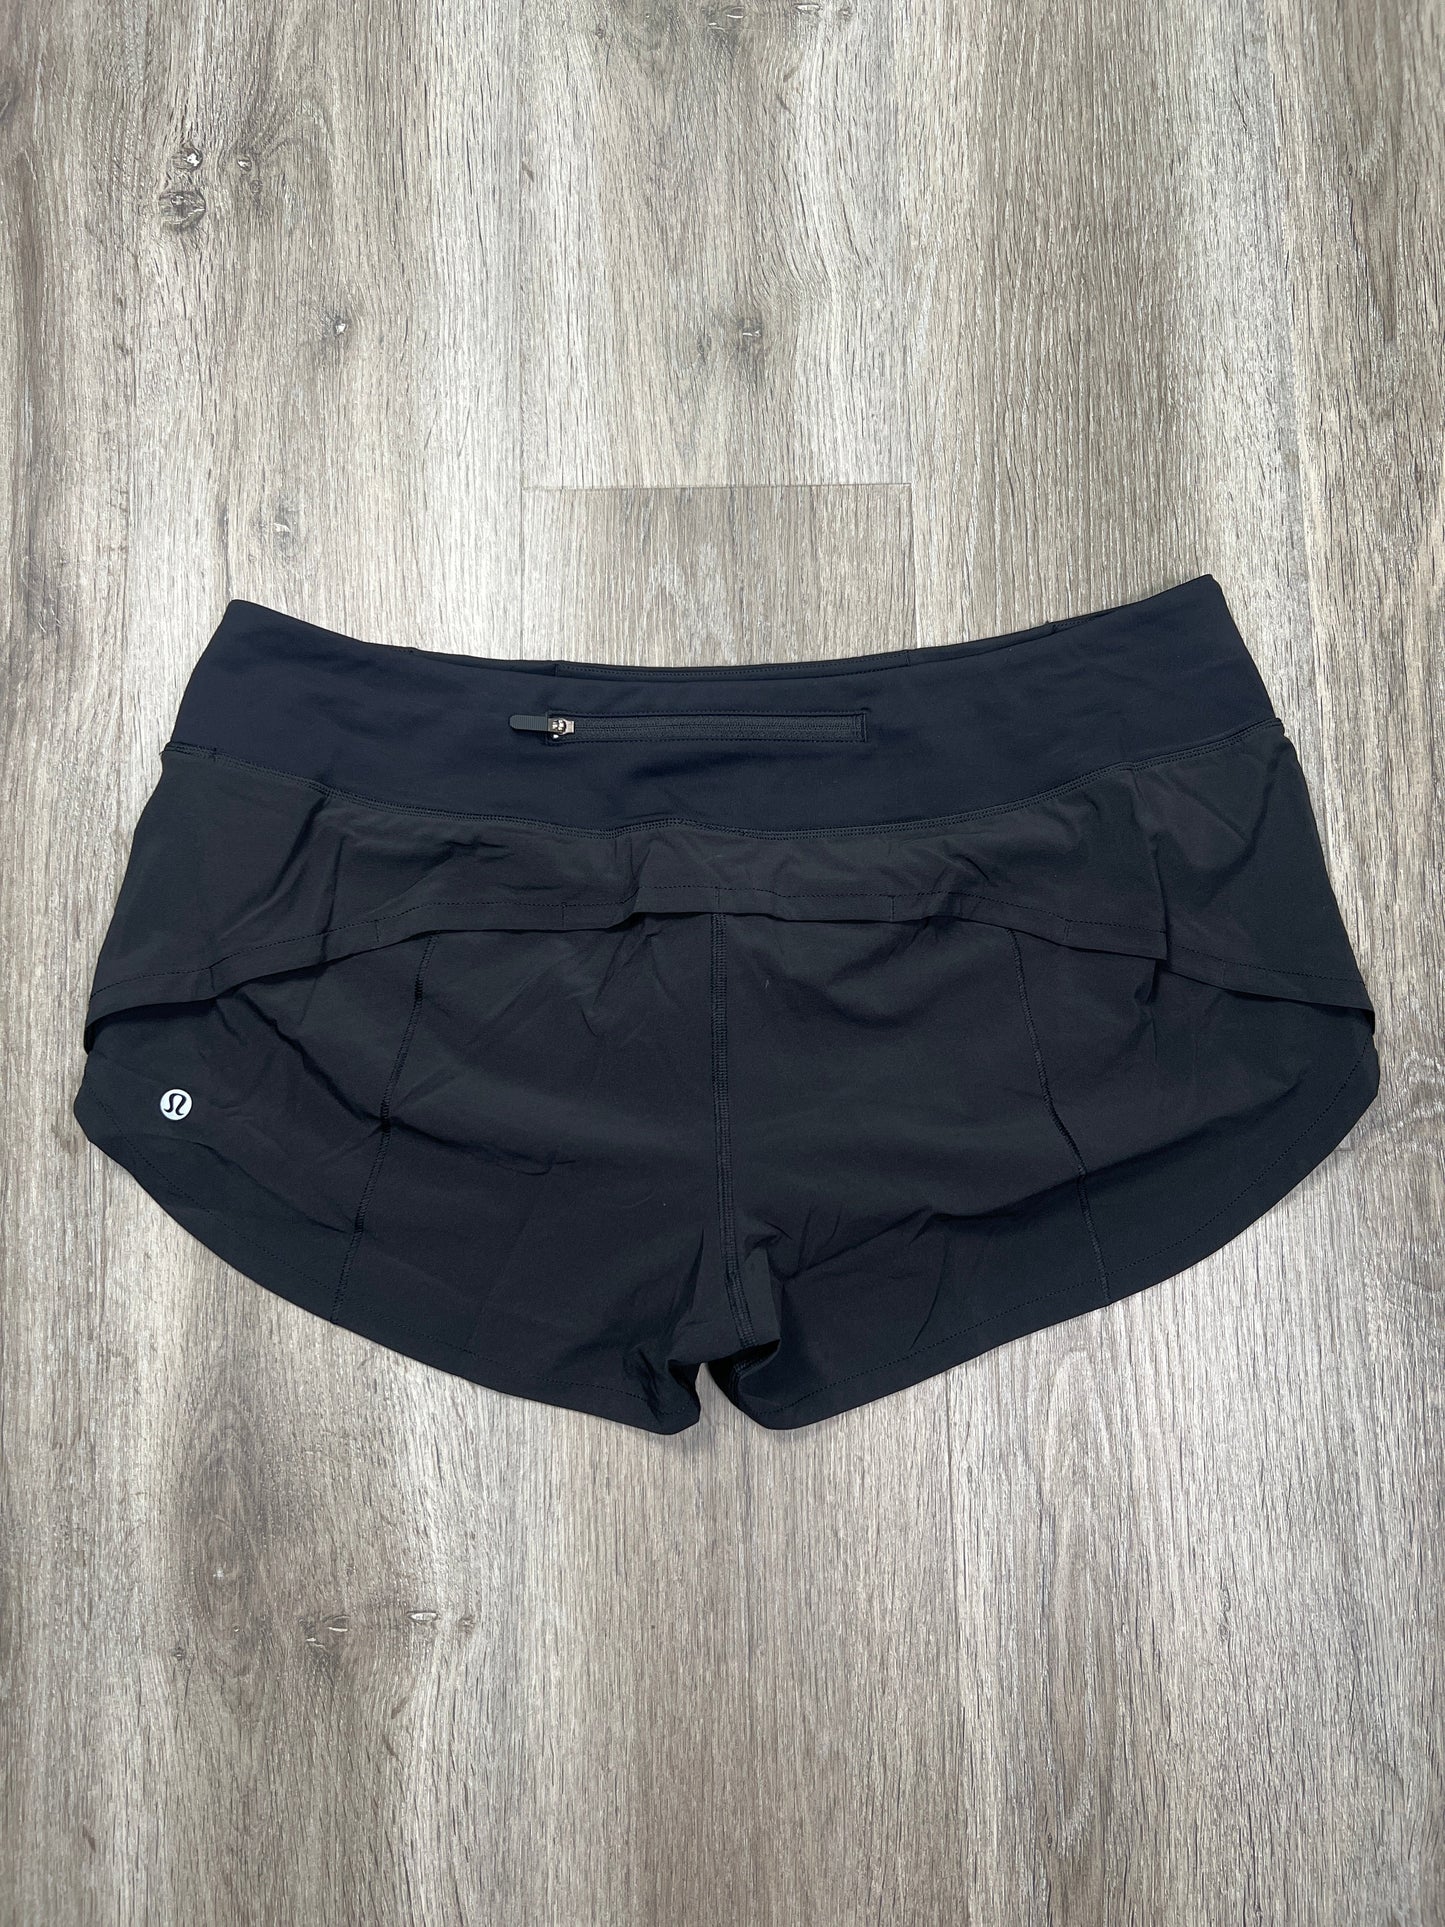 Black Athletic Shorts Lululemon, Size L